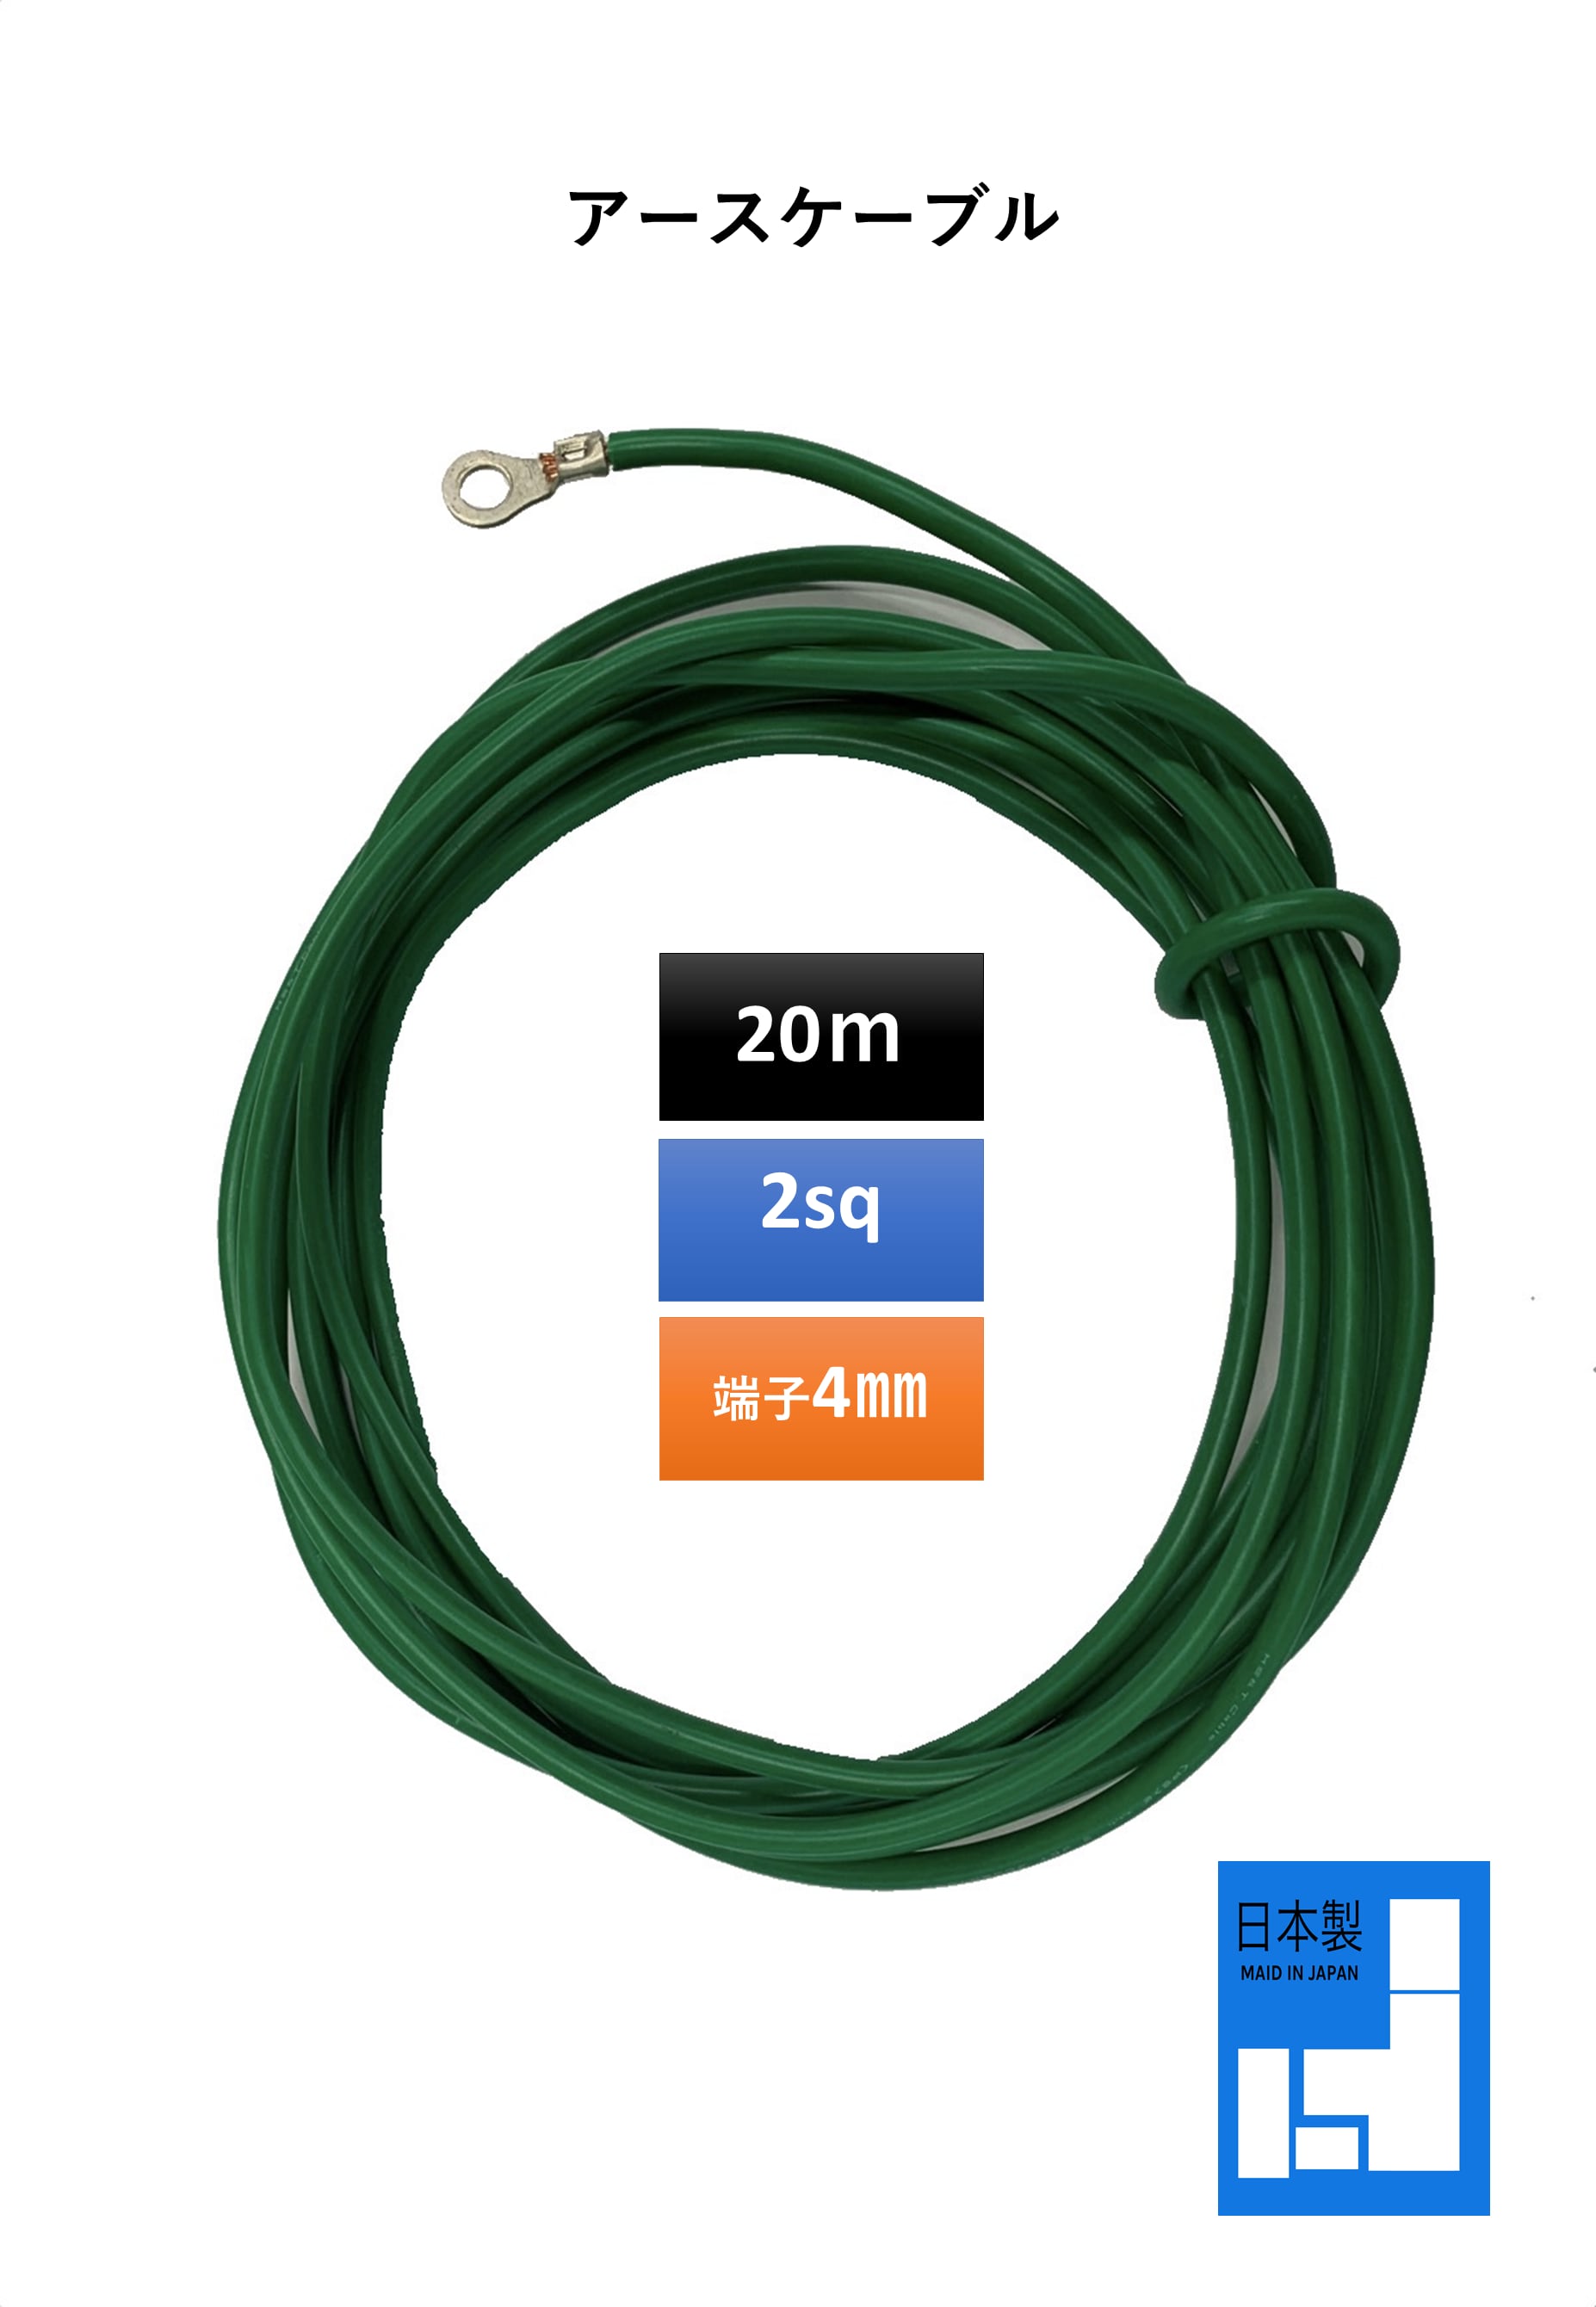 新品未使用正規品 切売 IV SQ 緑 600Vビニル絶縁電線 より線 緑色